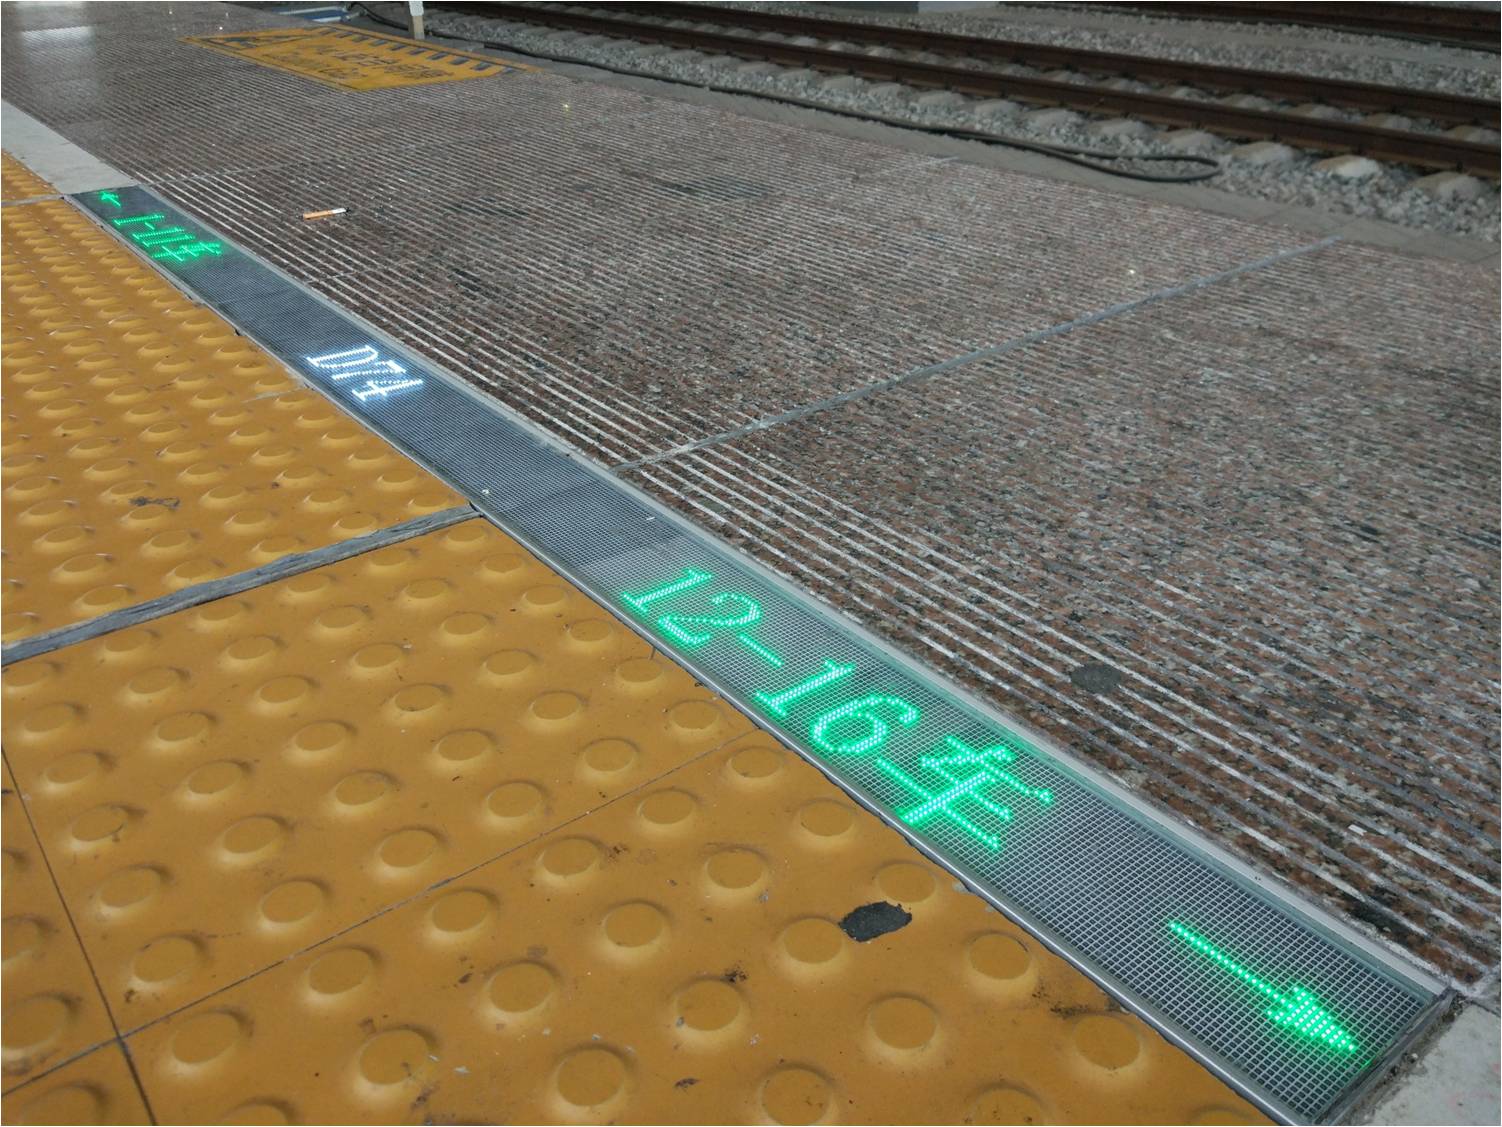 奇辉 铁路地面显示系统 LED全彩显示 **屏 地面显示车次 车厢 车号